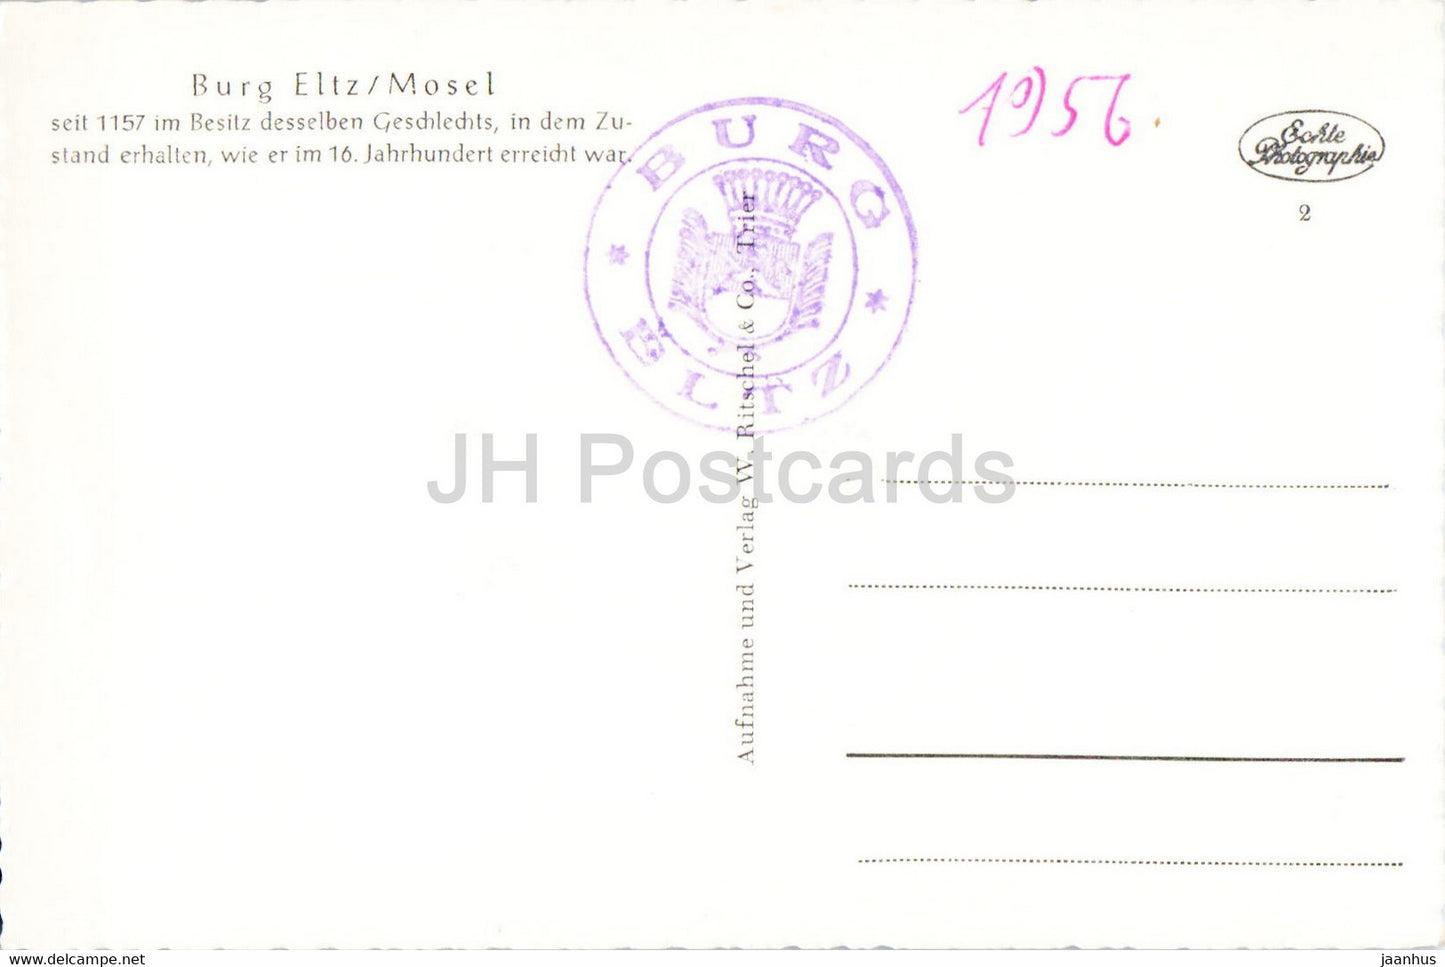 Burg Eltz - Moselle - Château - carte postale ancienne - Allemagne - inutilisé